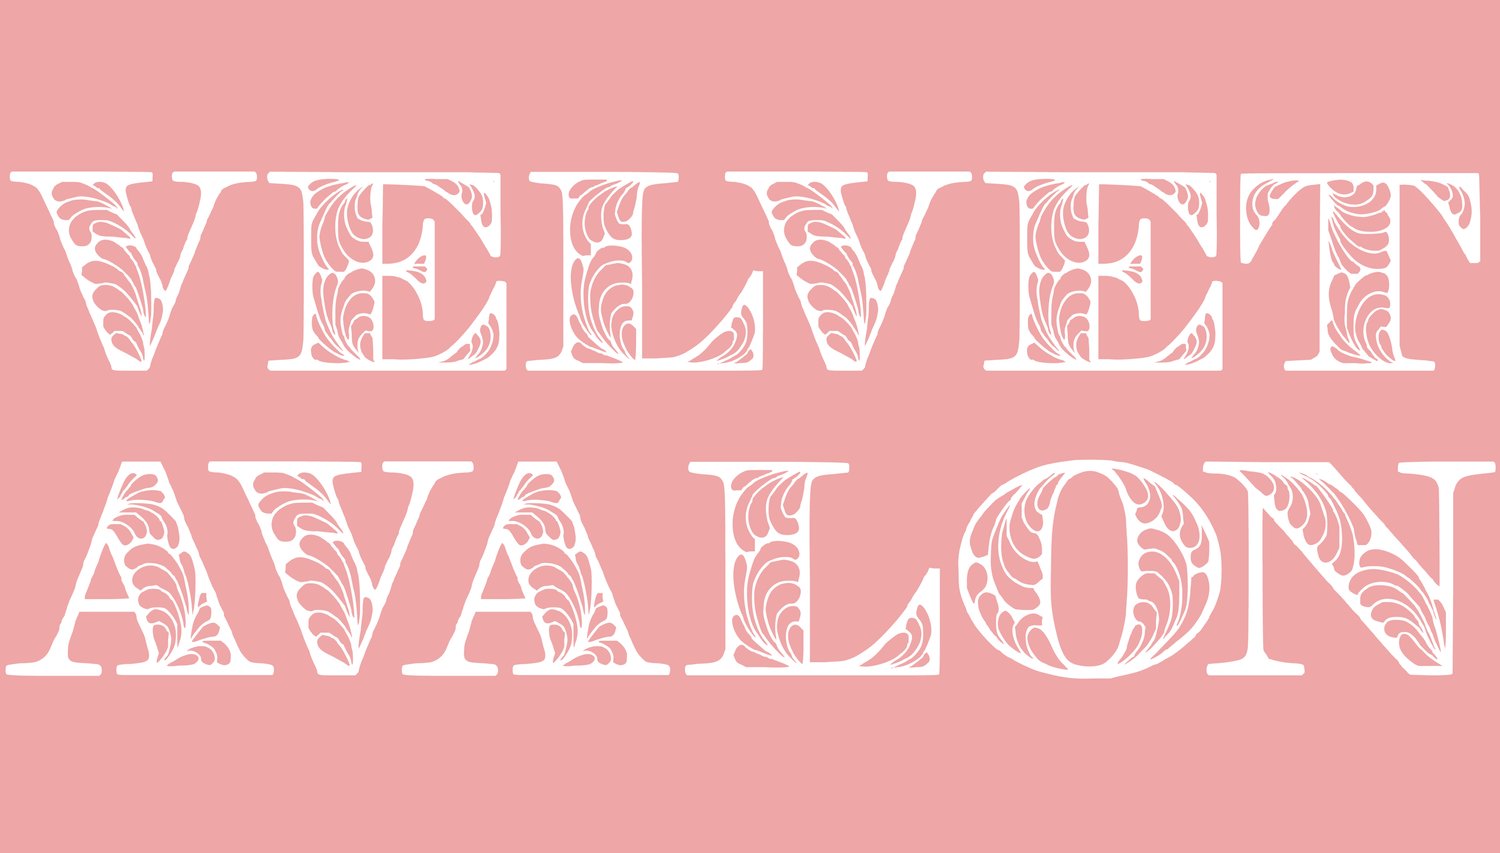 Velvet Avalon